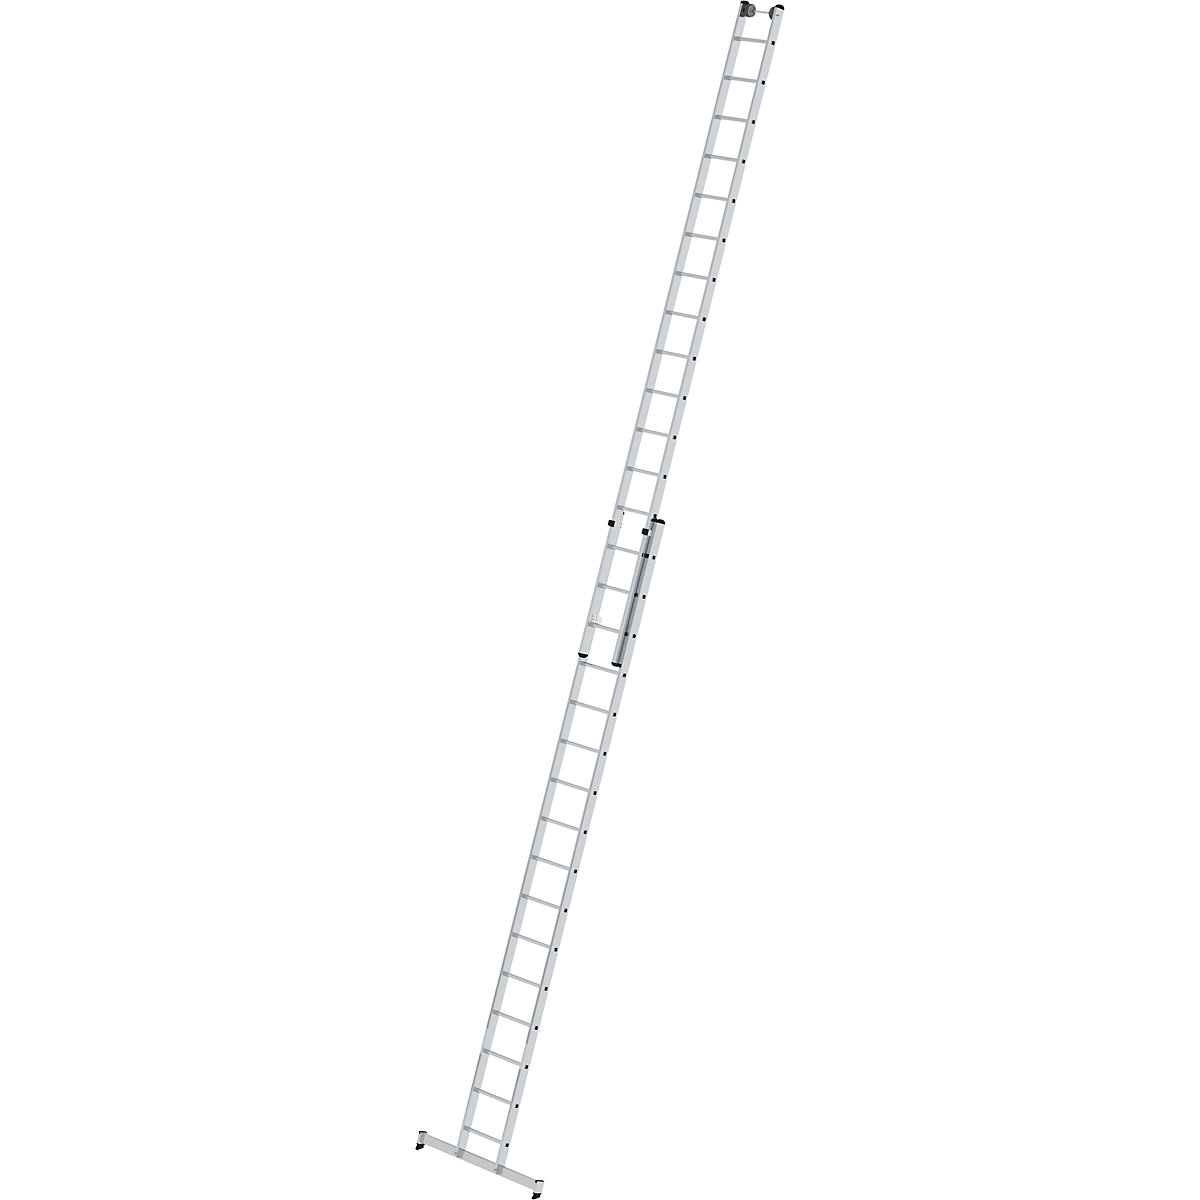 Aanlegladder, in hoogte verstelbaar – MUNK, schuifladder, 2-delig, 2 x 16 sporten, met nivello®-stabiliteitsbalk-7